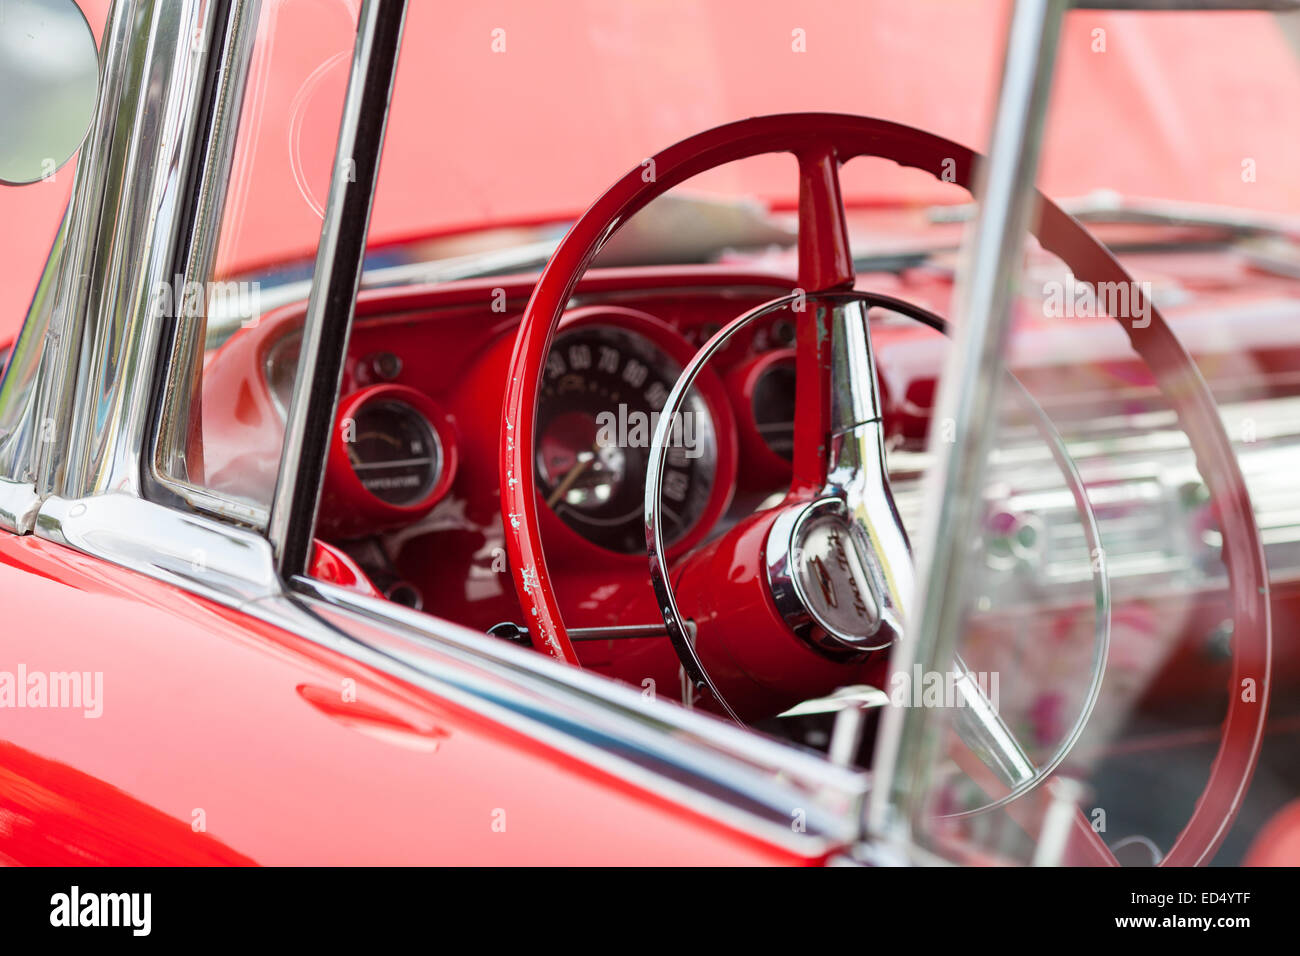 À l'intérieur d'une voiture américaine classique vintage rouge prises lors d'un rassemblement. Montrant le volant et tableau de bord d'horloges. Banque D'Images